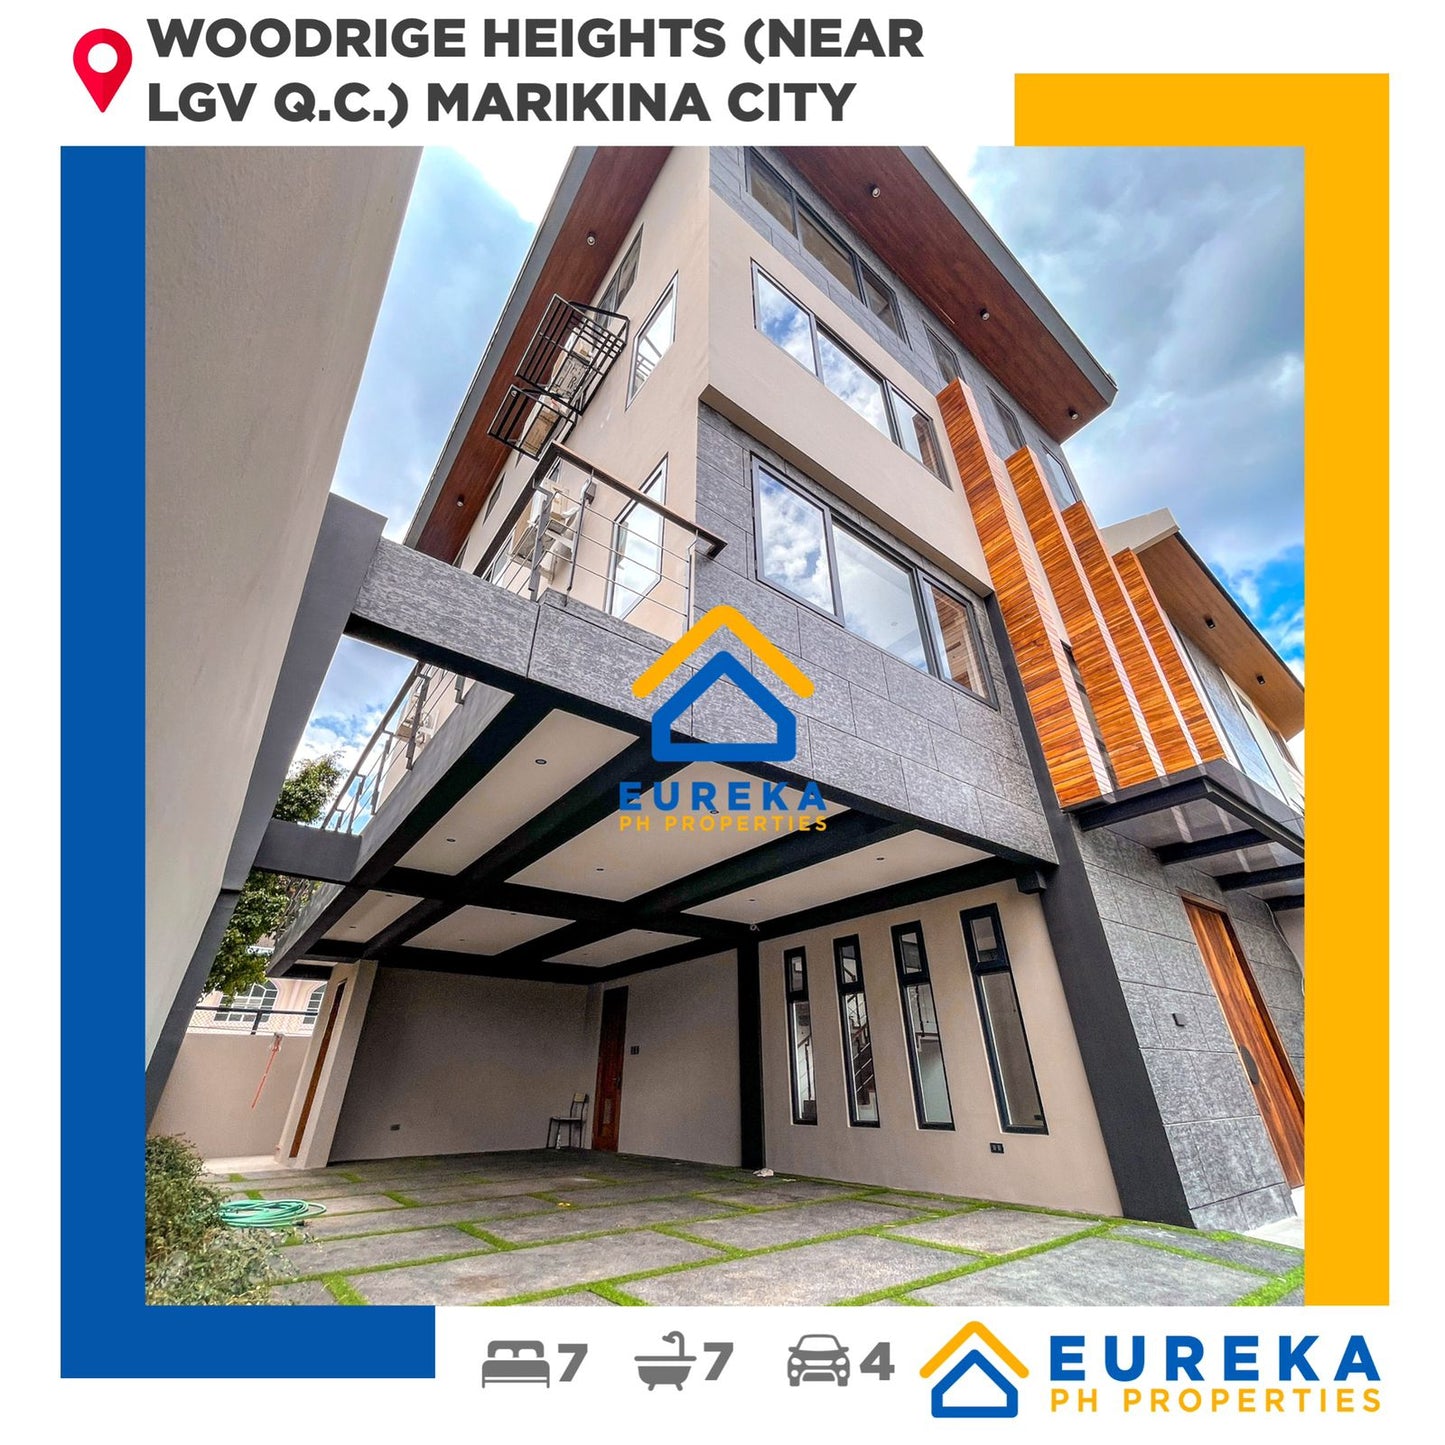 Brand New Premium 4 Storey Modern House and Lot at Woodridge Heights Marikina (Near LGV Q.C.)